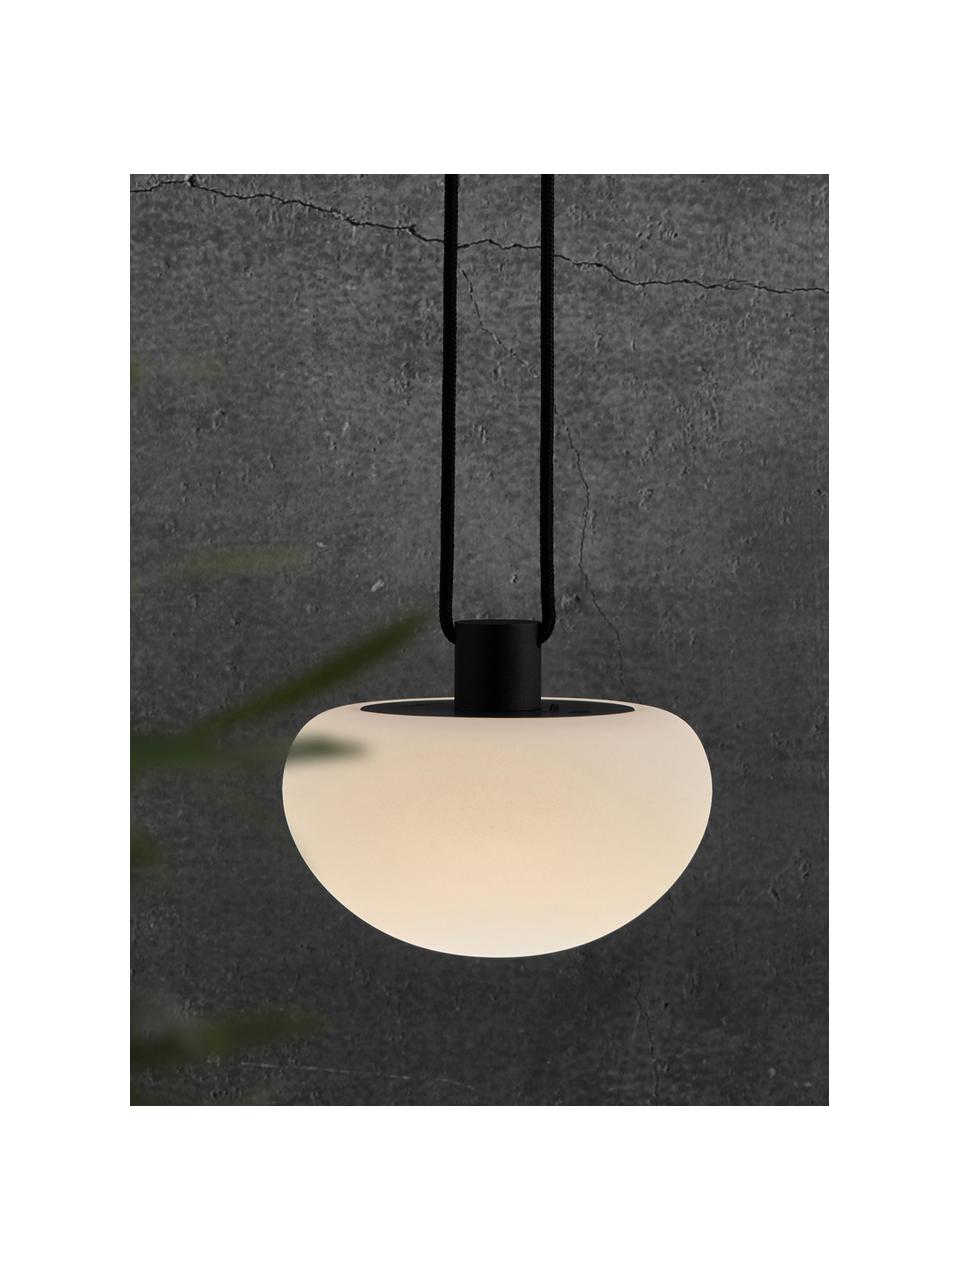 Mobilna lampa wisząca z funkcją przyciemniania Sponge, Biały, czarny, Ø 20 x W 16 cm